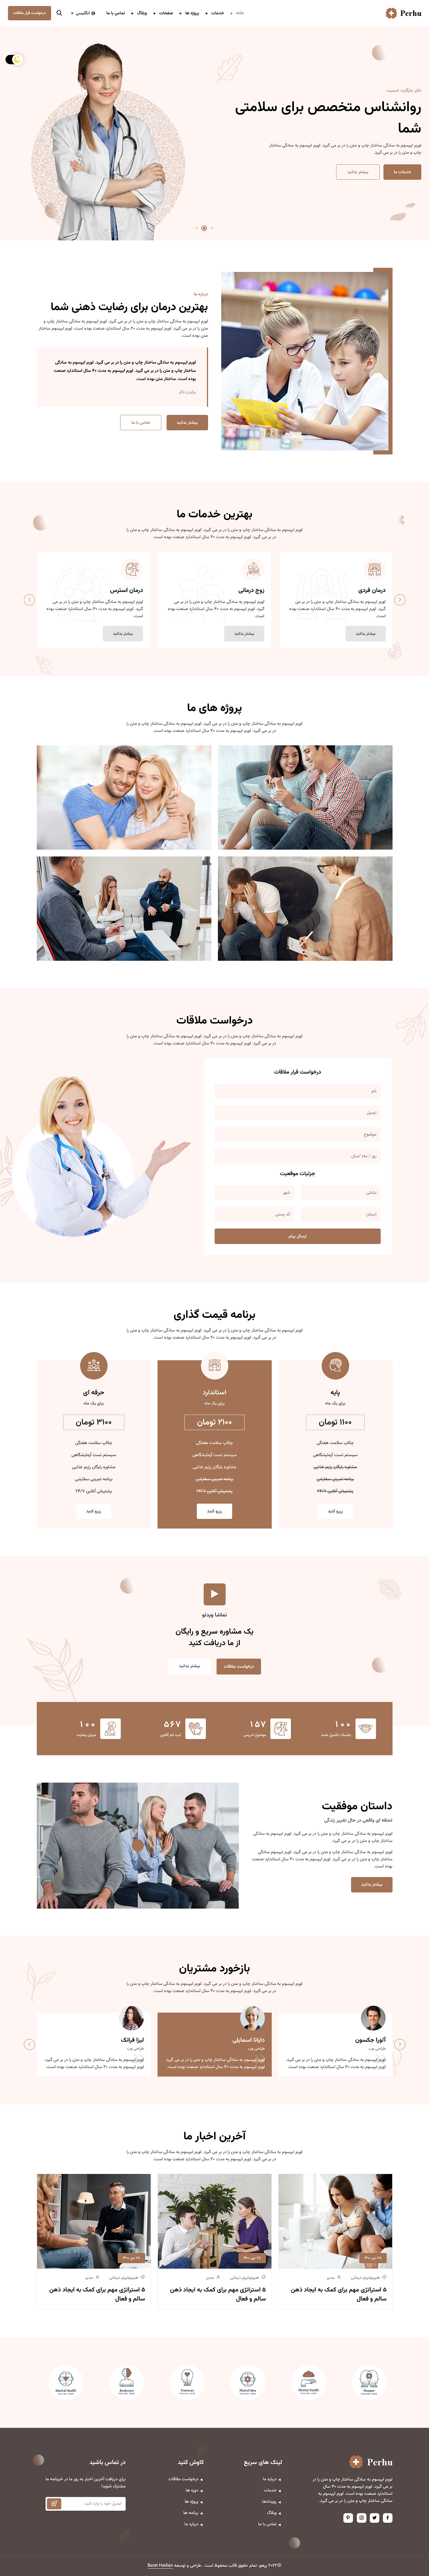 صفحات قالب Perhu برای طراحی سایت پزشکی